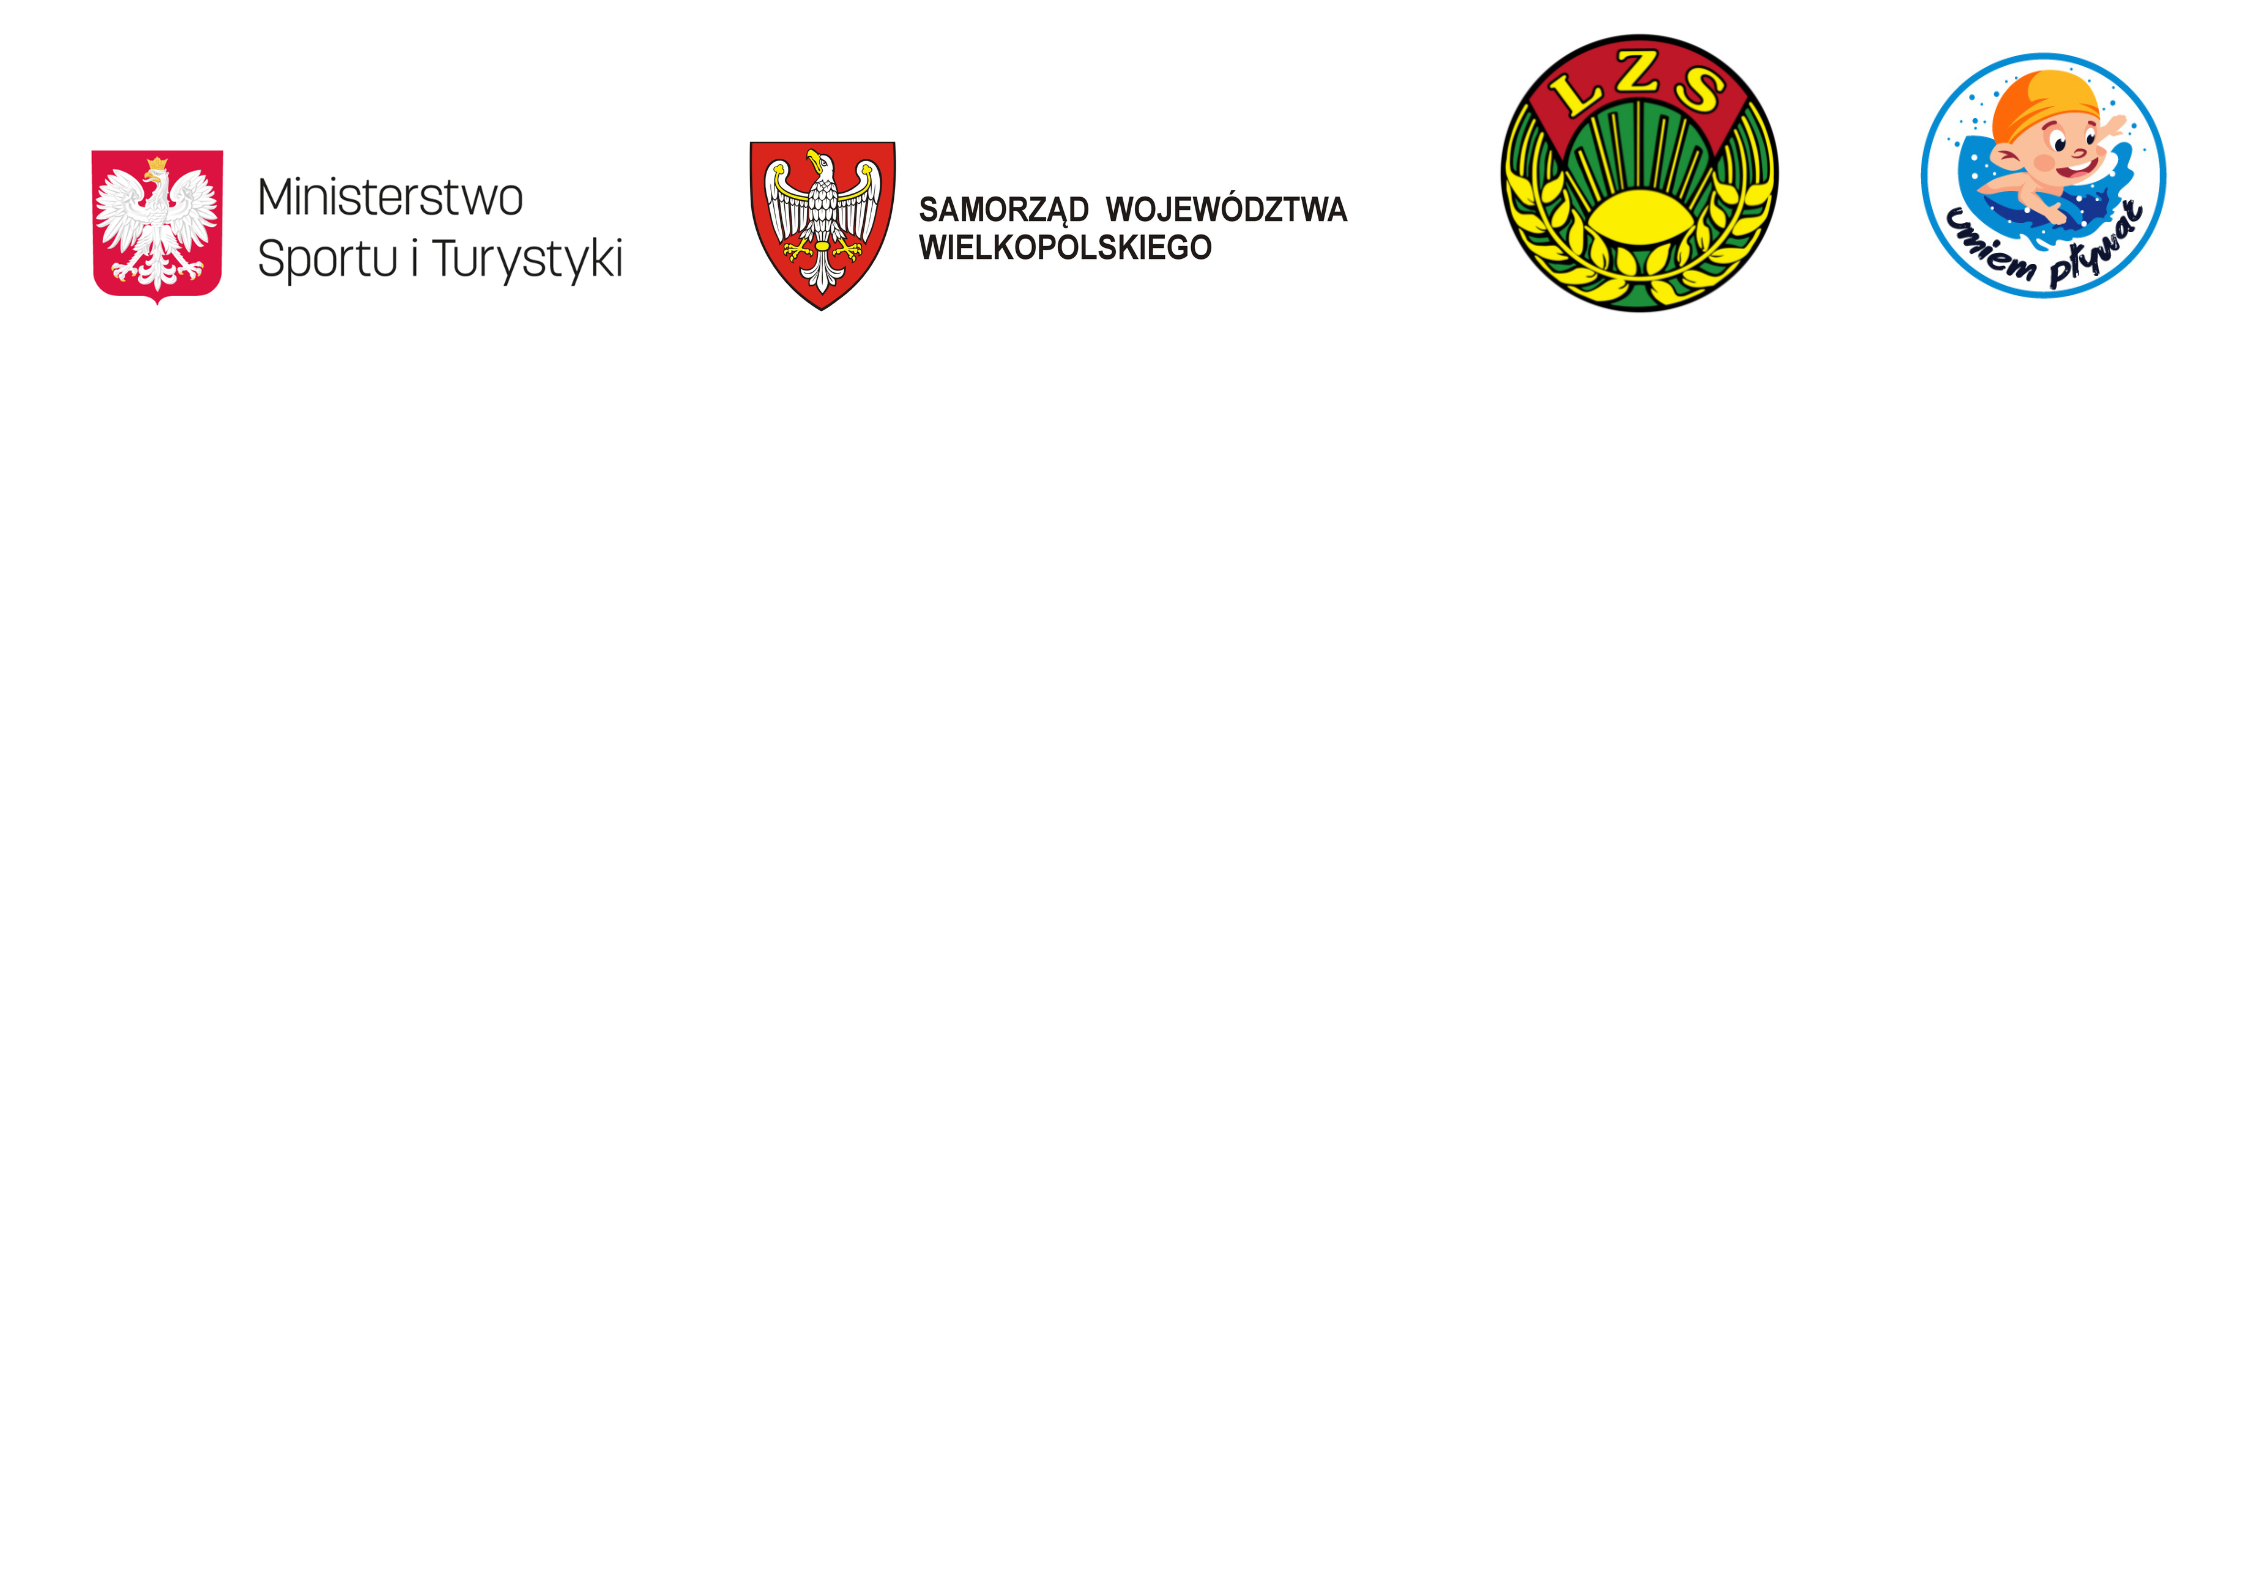 Logotypy z Ministerstwa Sportu i Turystyki, Umiem Pływać, LZS